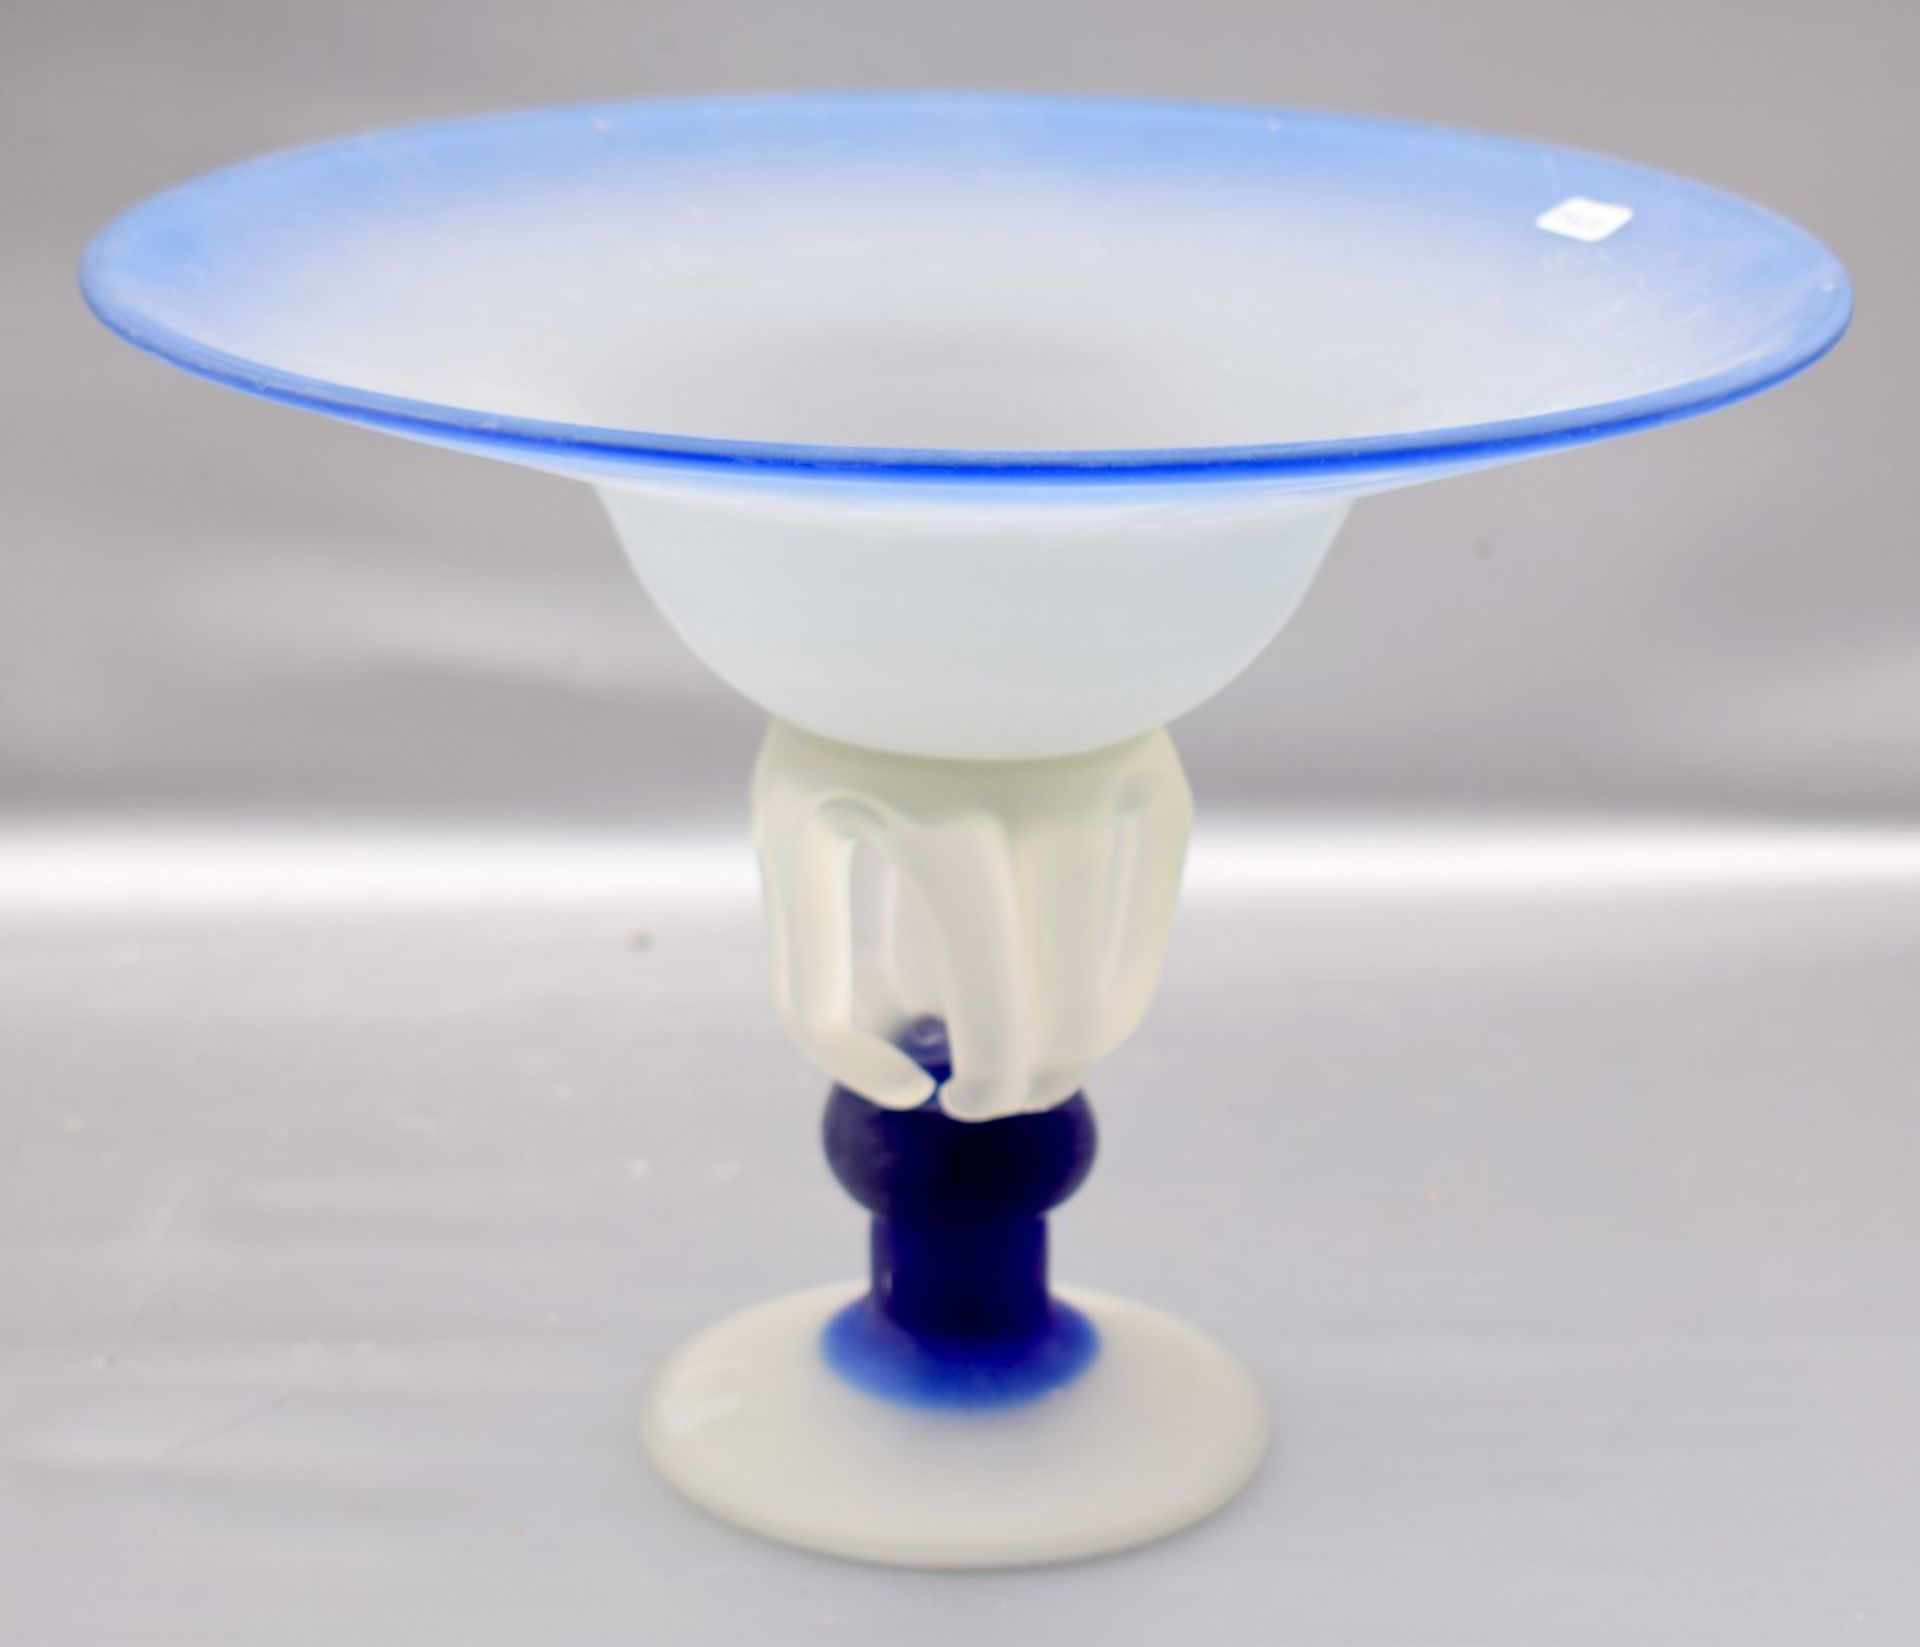 Aufsatzschale farbl. Glas, mit weißer und blauer Farbeinschmelzung, rund, H 21 cm, Dm 29 cm